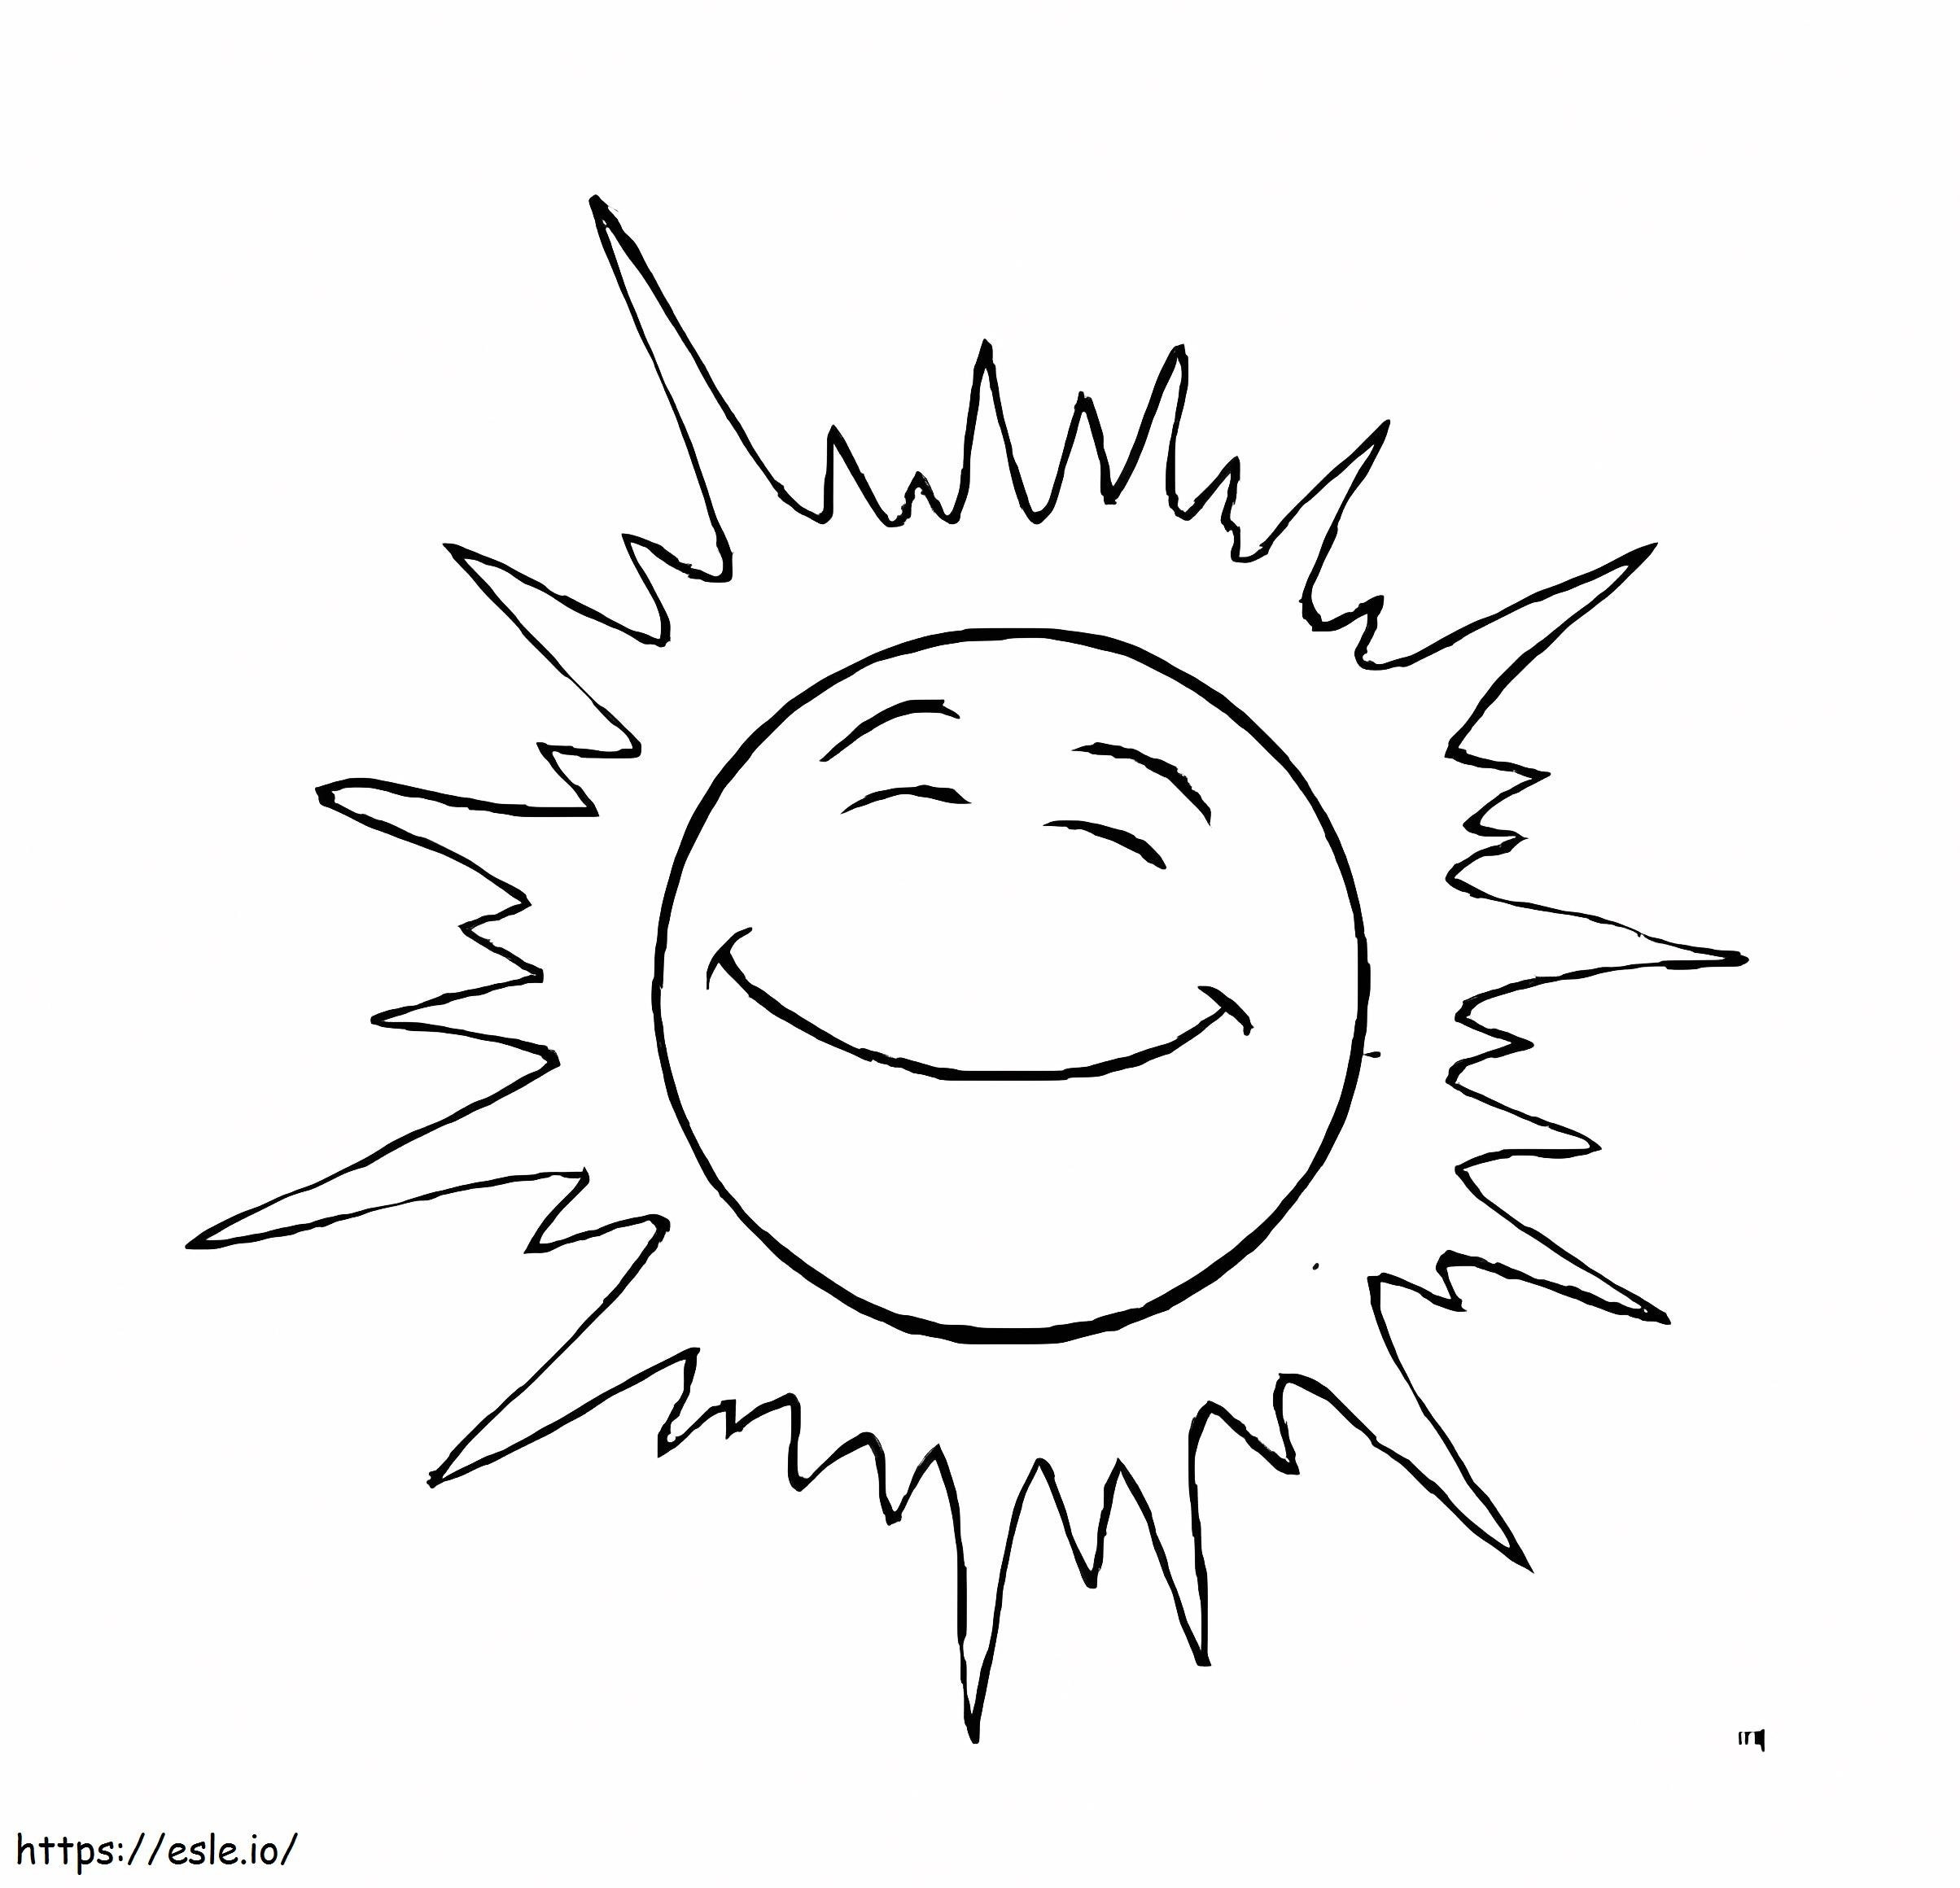 Coloriage Soleil souriant à imprimer dessin